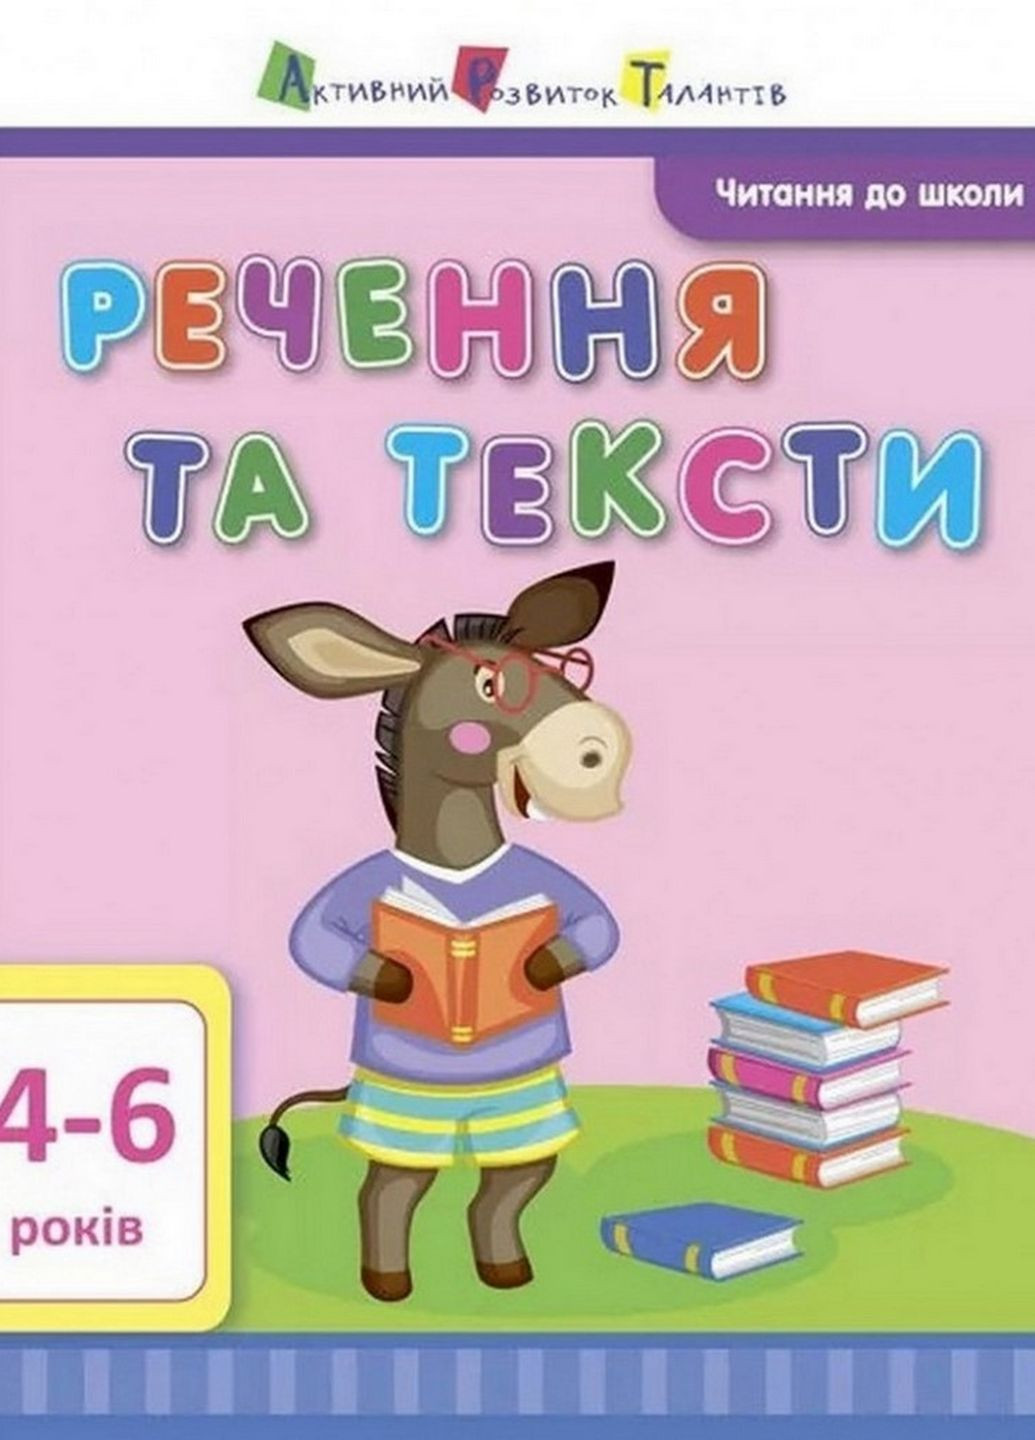 Обучающая книга "Чтение в школу: Предложения и тексты" АРТ 12604 укр Ranok Creative (276776594)